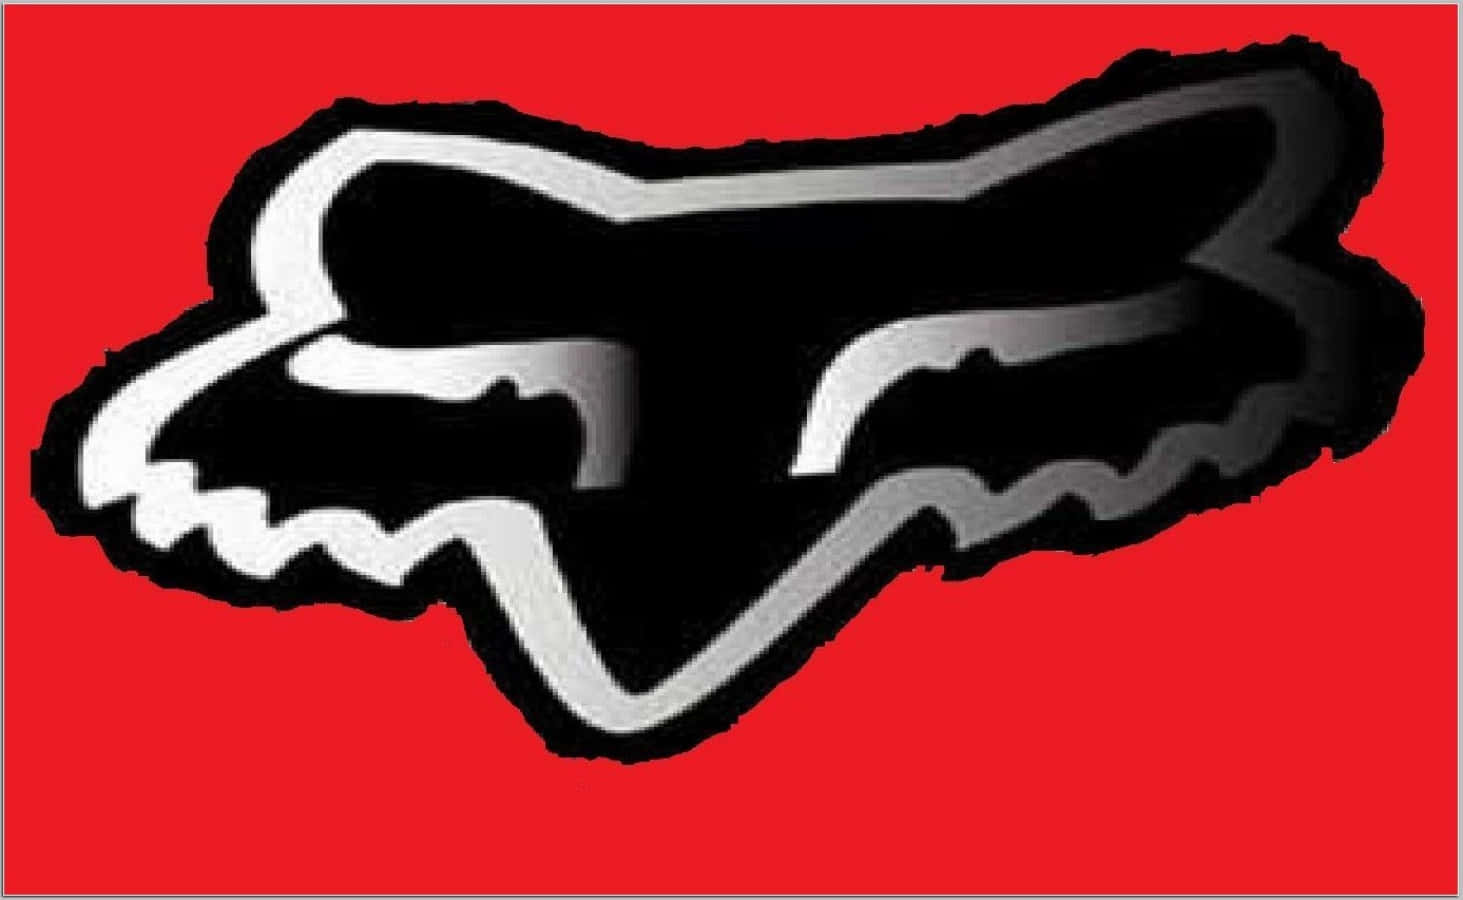 Schwarzesund Weißes Fox Racing Logo Wallpaper